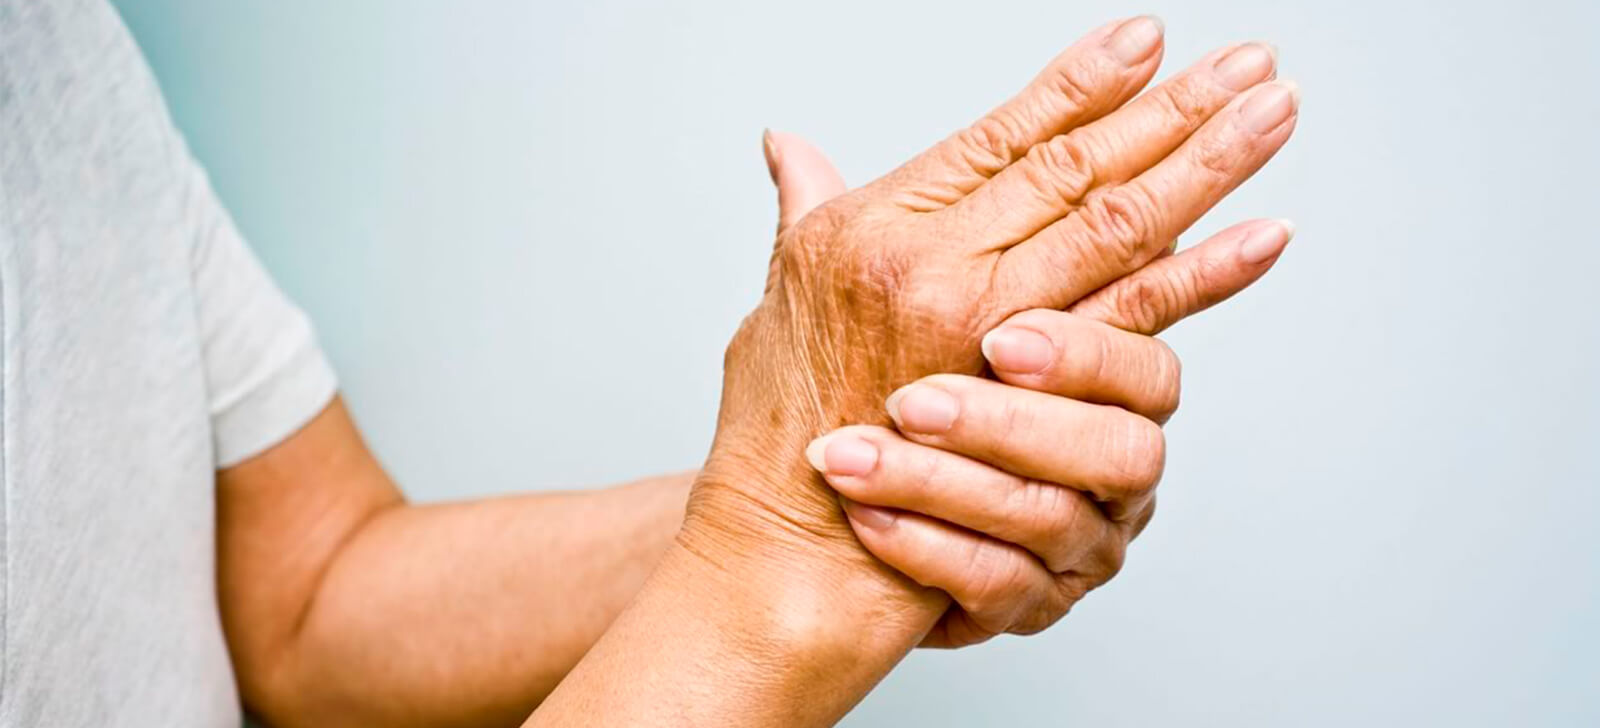 Sintomas e tratamentos para artrose